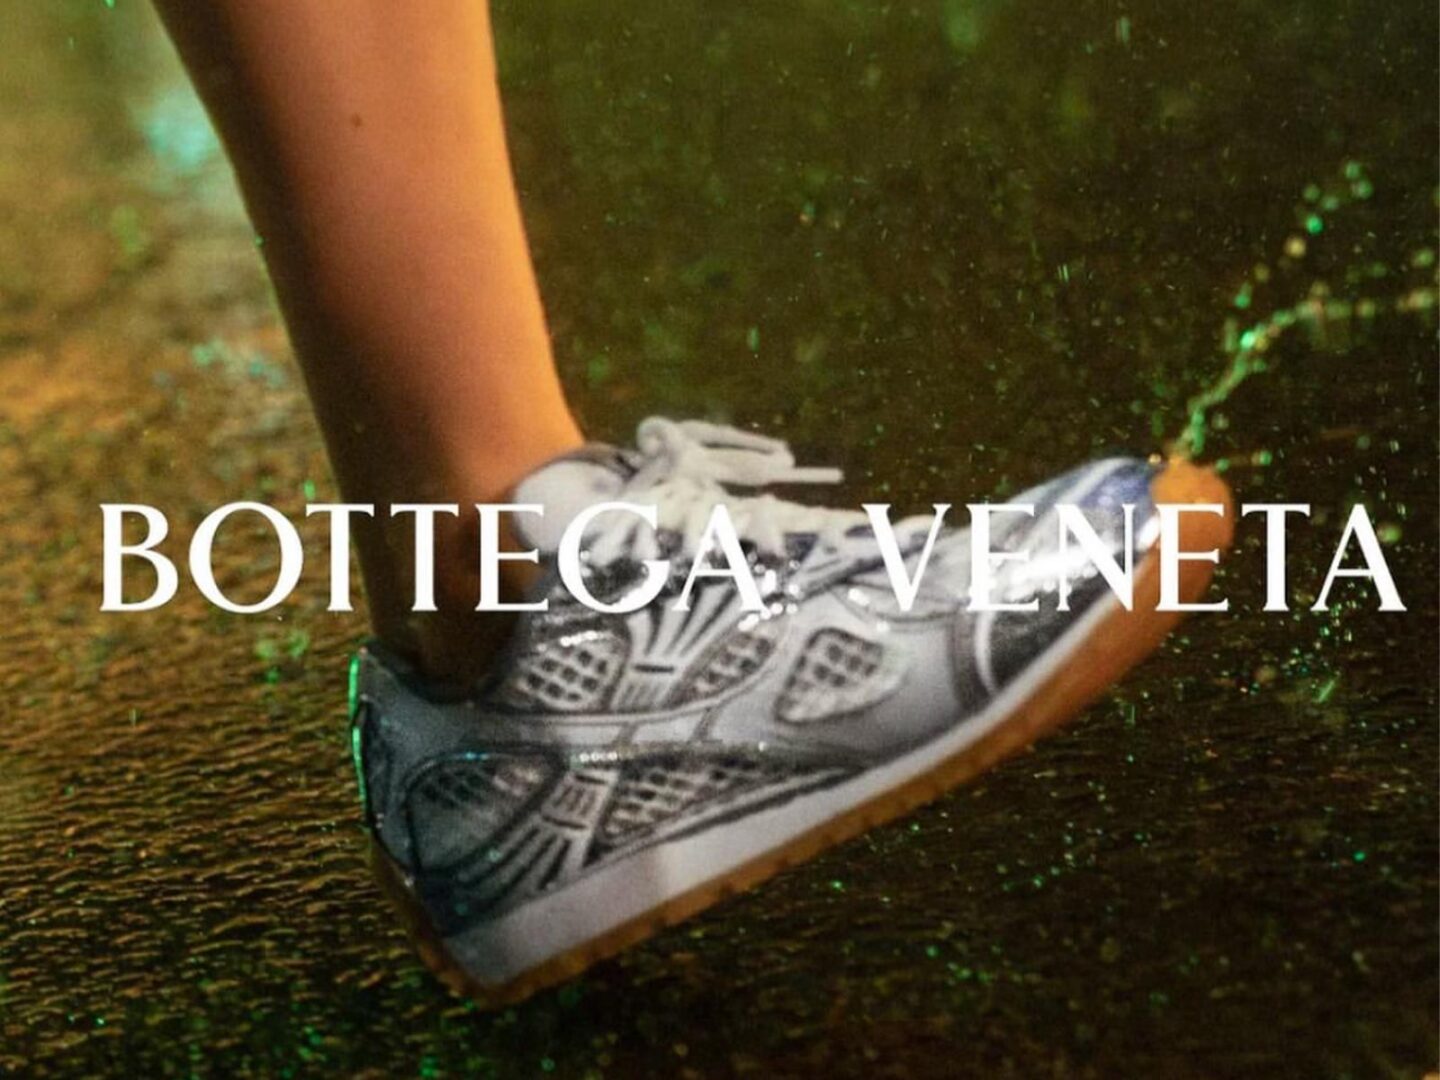 Las Orbit Sneakers de Bottega Veneta son todo lo que necesitamos esta temporada